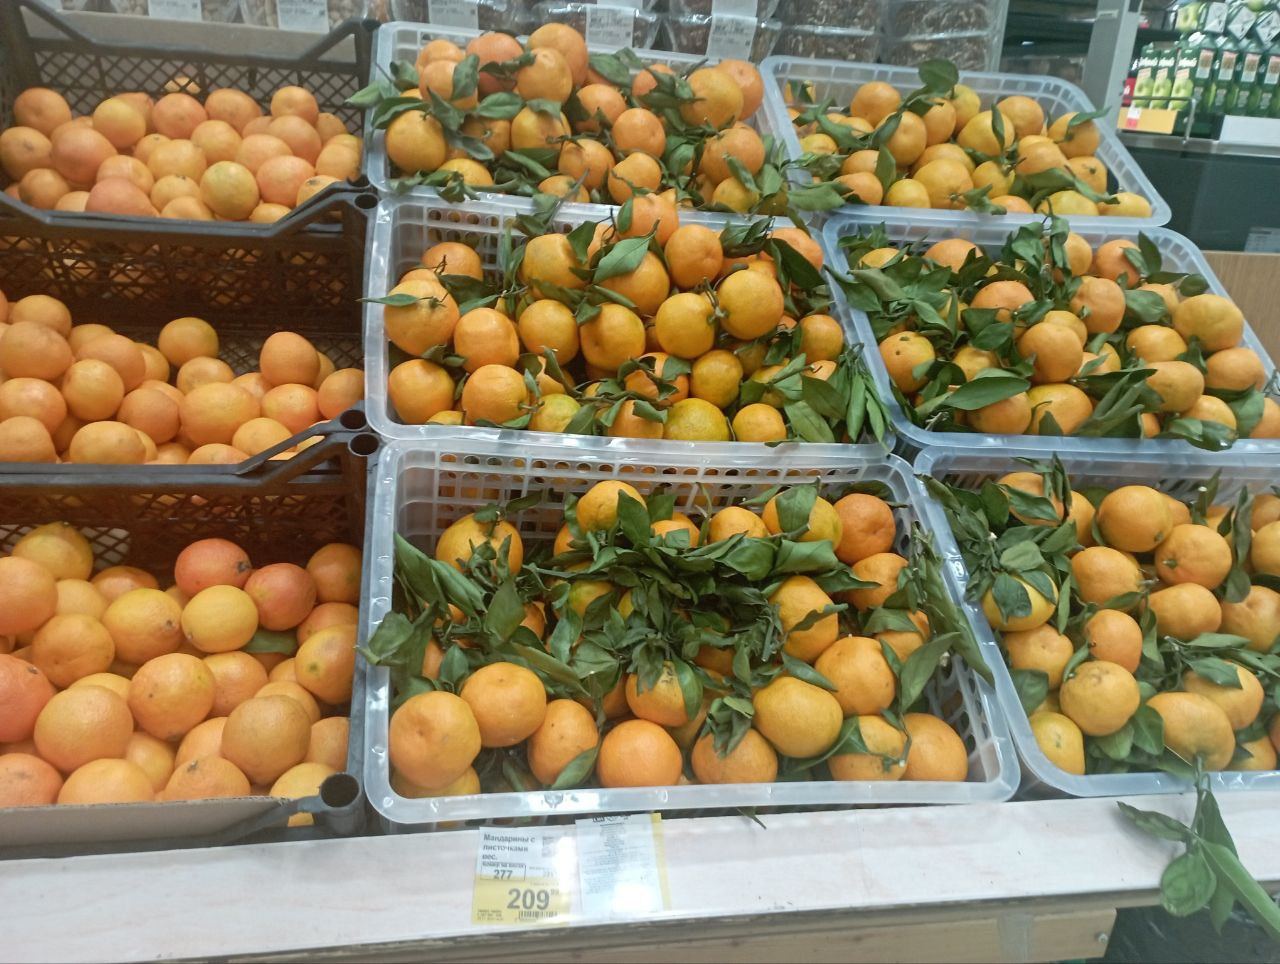 В «Ленте» самый широкий выбор мандаринов из всех гипермаркетов. Например, в «Марии-ра» в ЦУМе их не было вообще